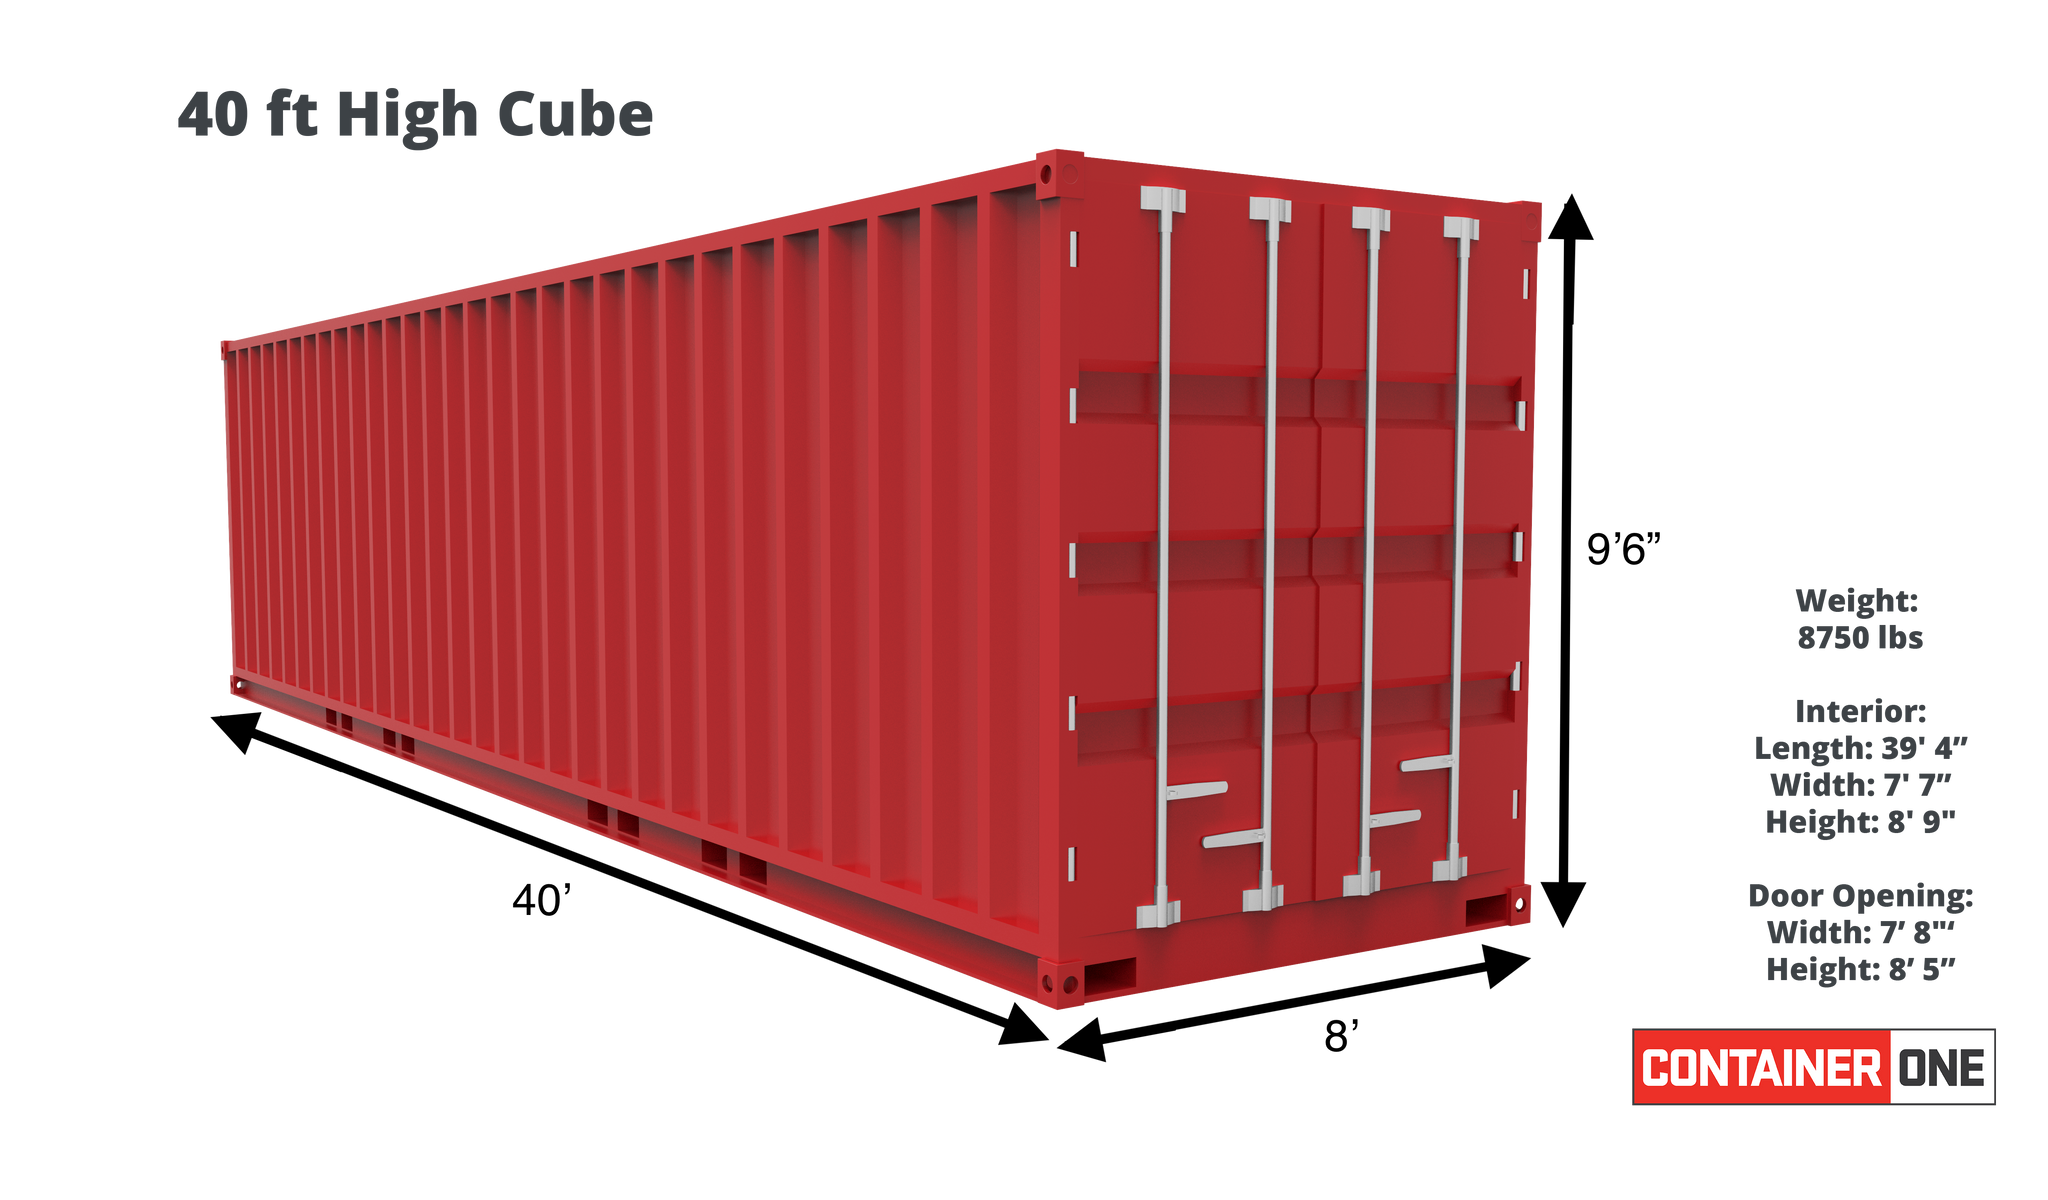 40 футов high cube. Контейнер 40 HC/hq (High Cube). 40 Футовый High Cube контейнер DC ISO. Габариты 20 футового контейнера High Cube. Габариты контейнера 40 футов High Cube.